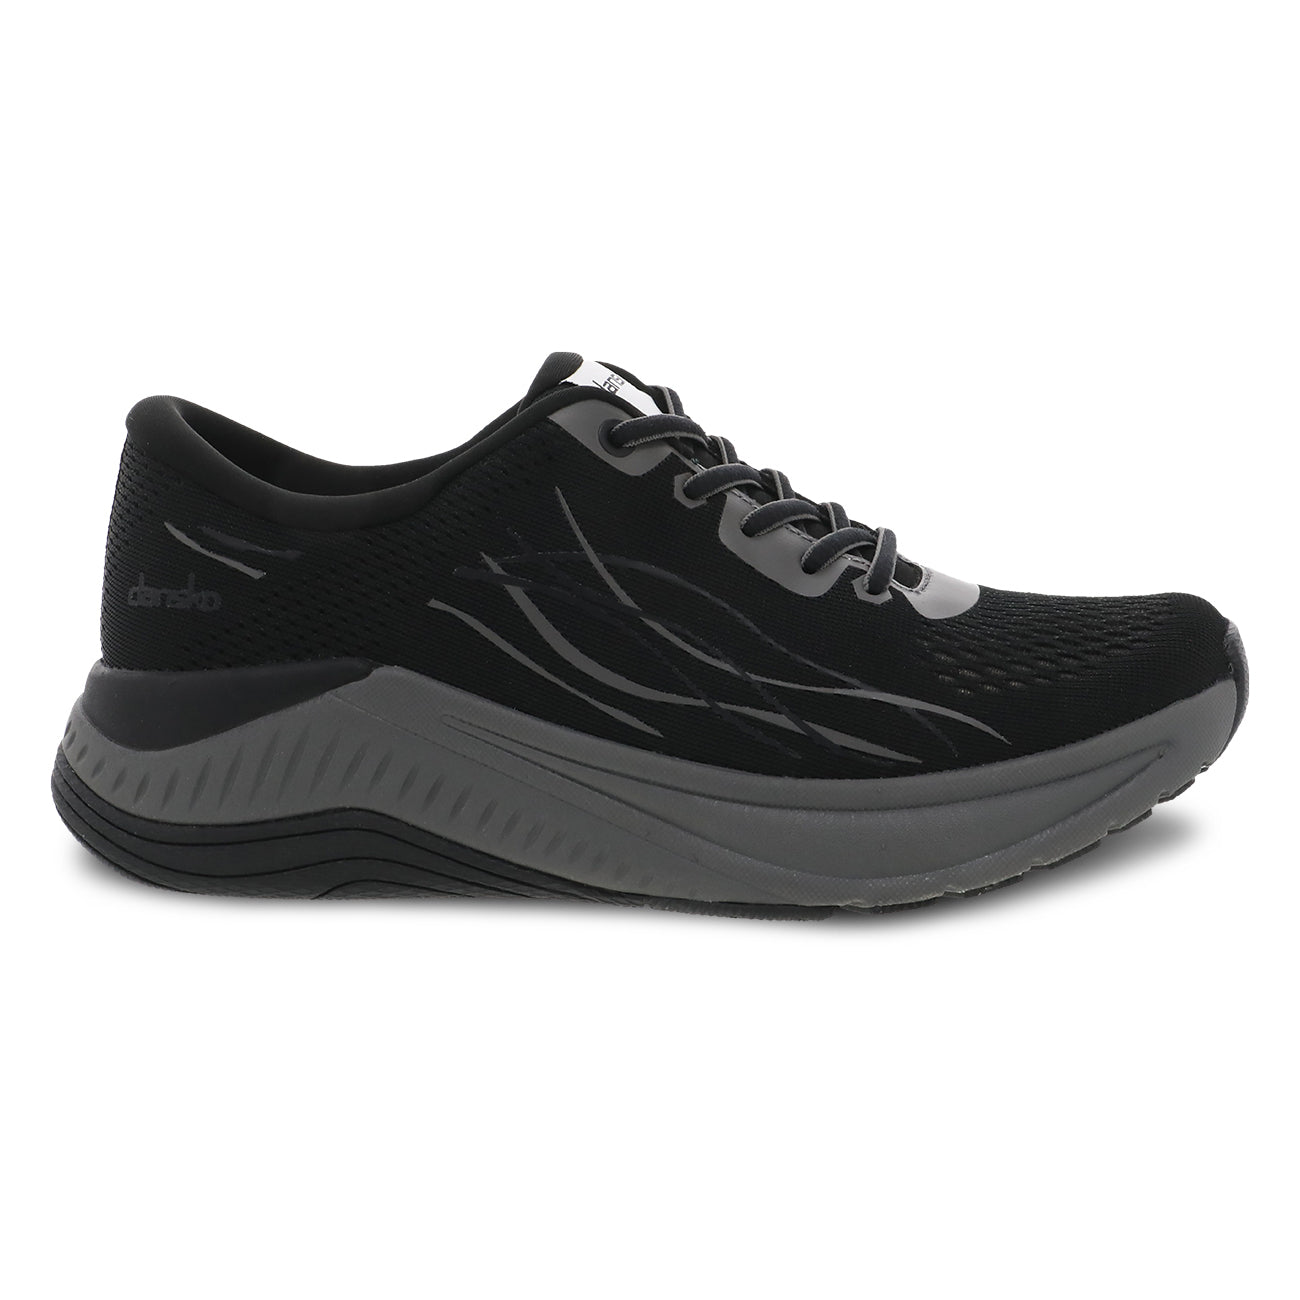 Dansko Women's Pace Walking Shoe - Black with Grey Sole